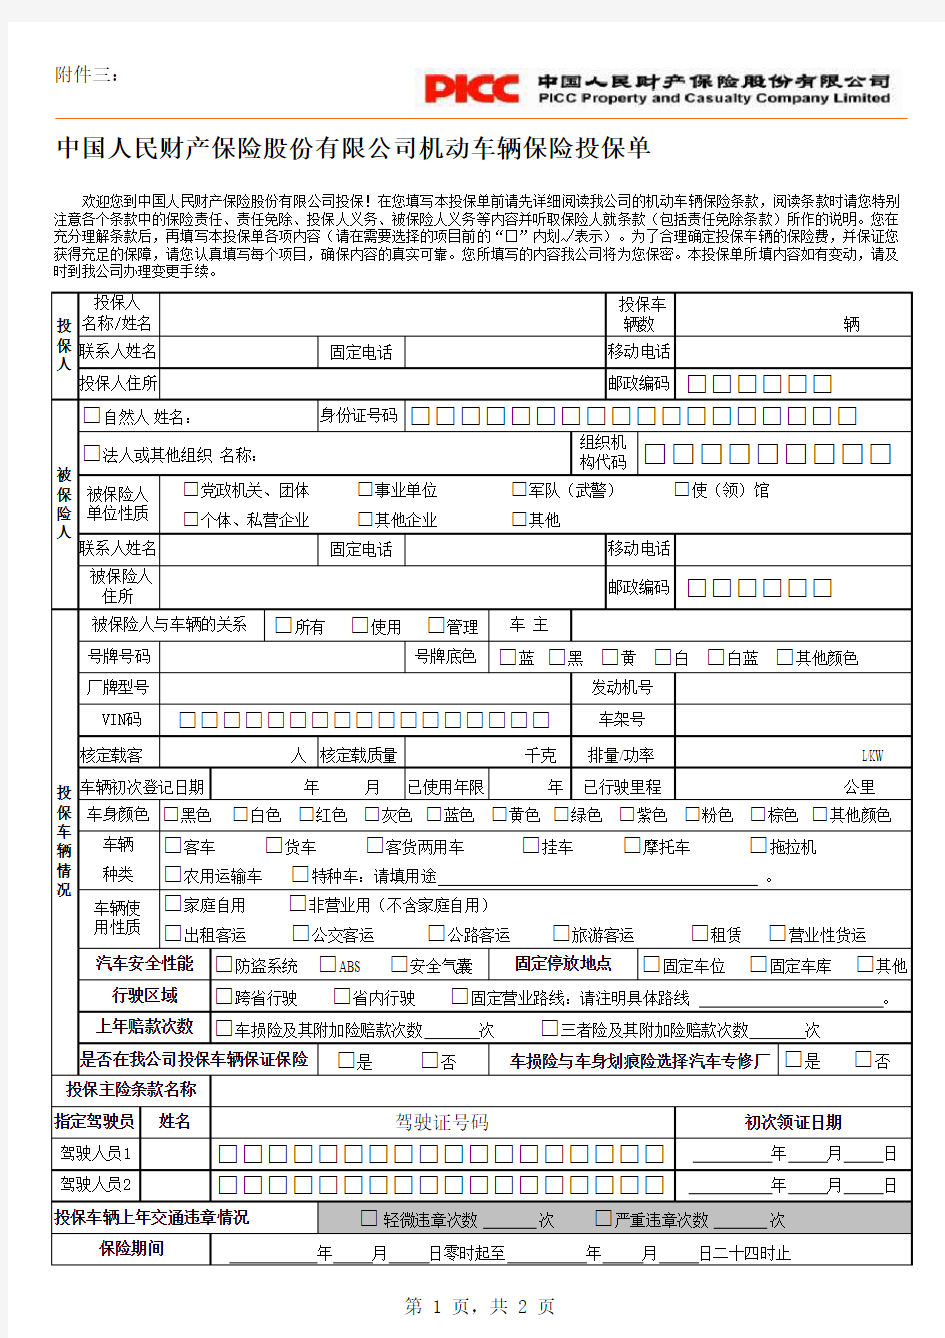 中国人保机动车辆险投保单2005122394837-1978596471